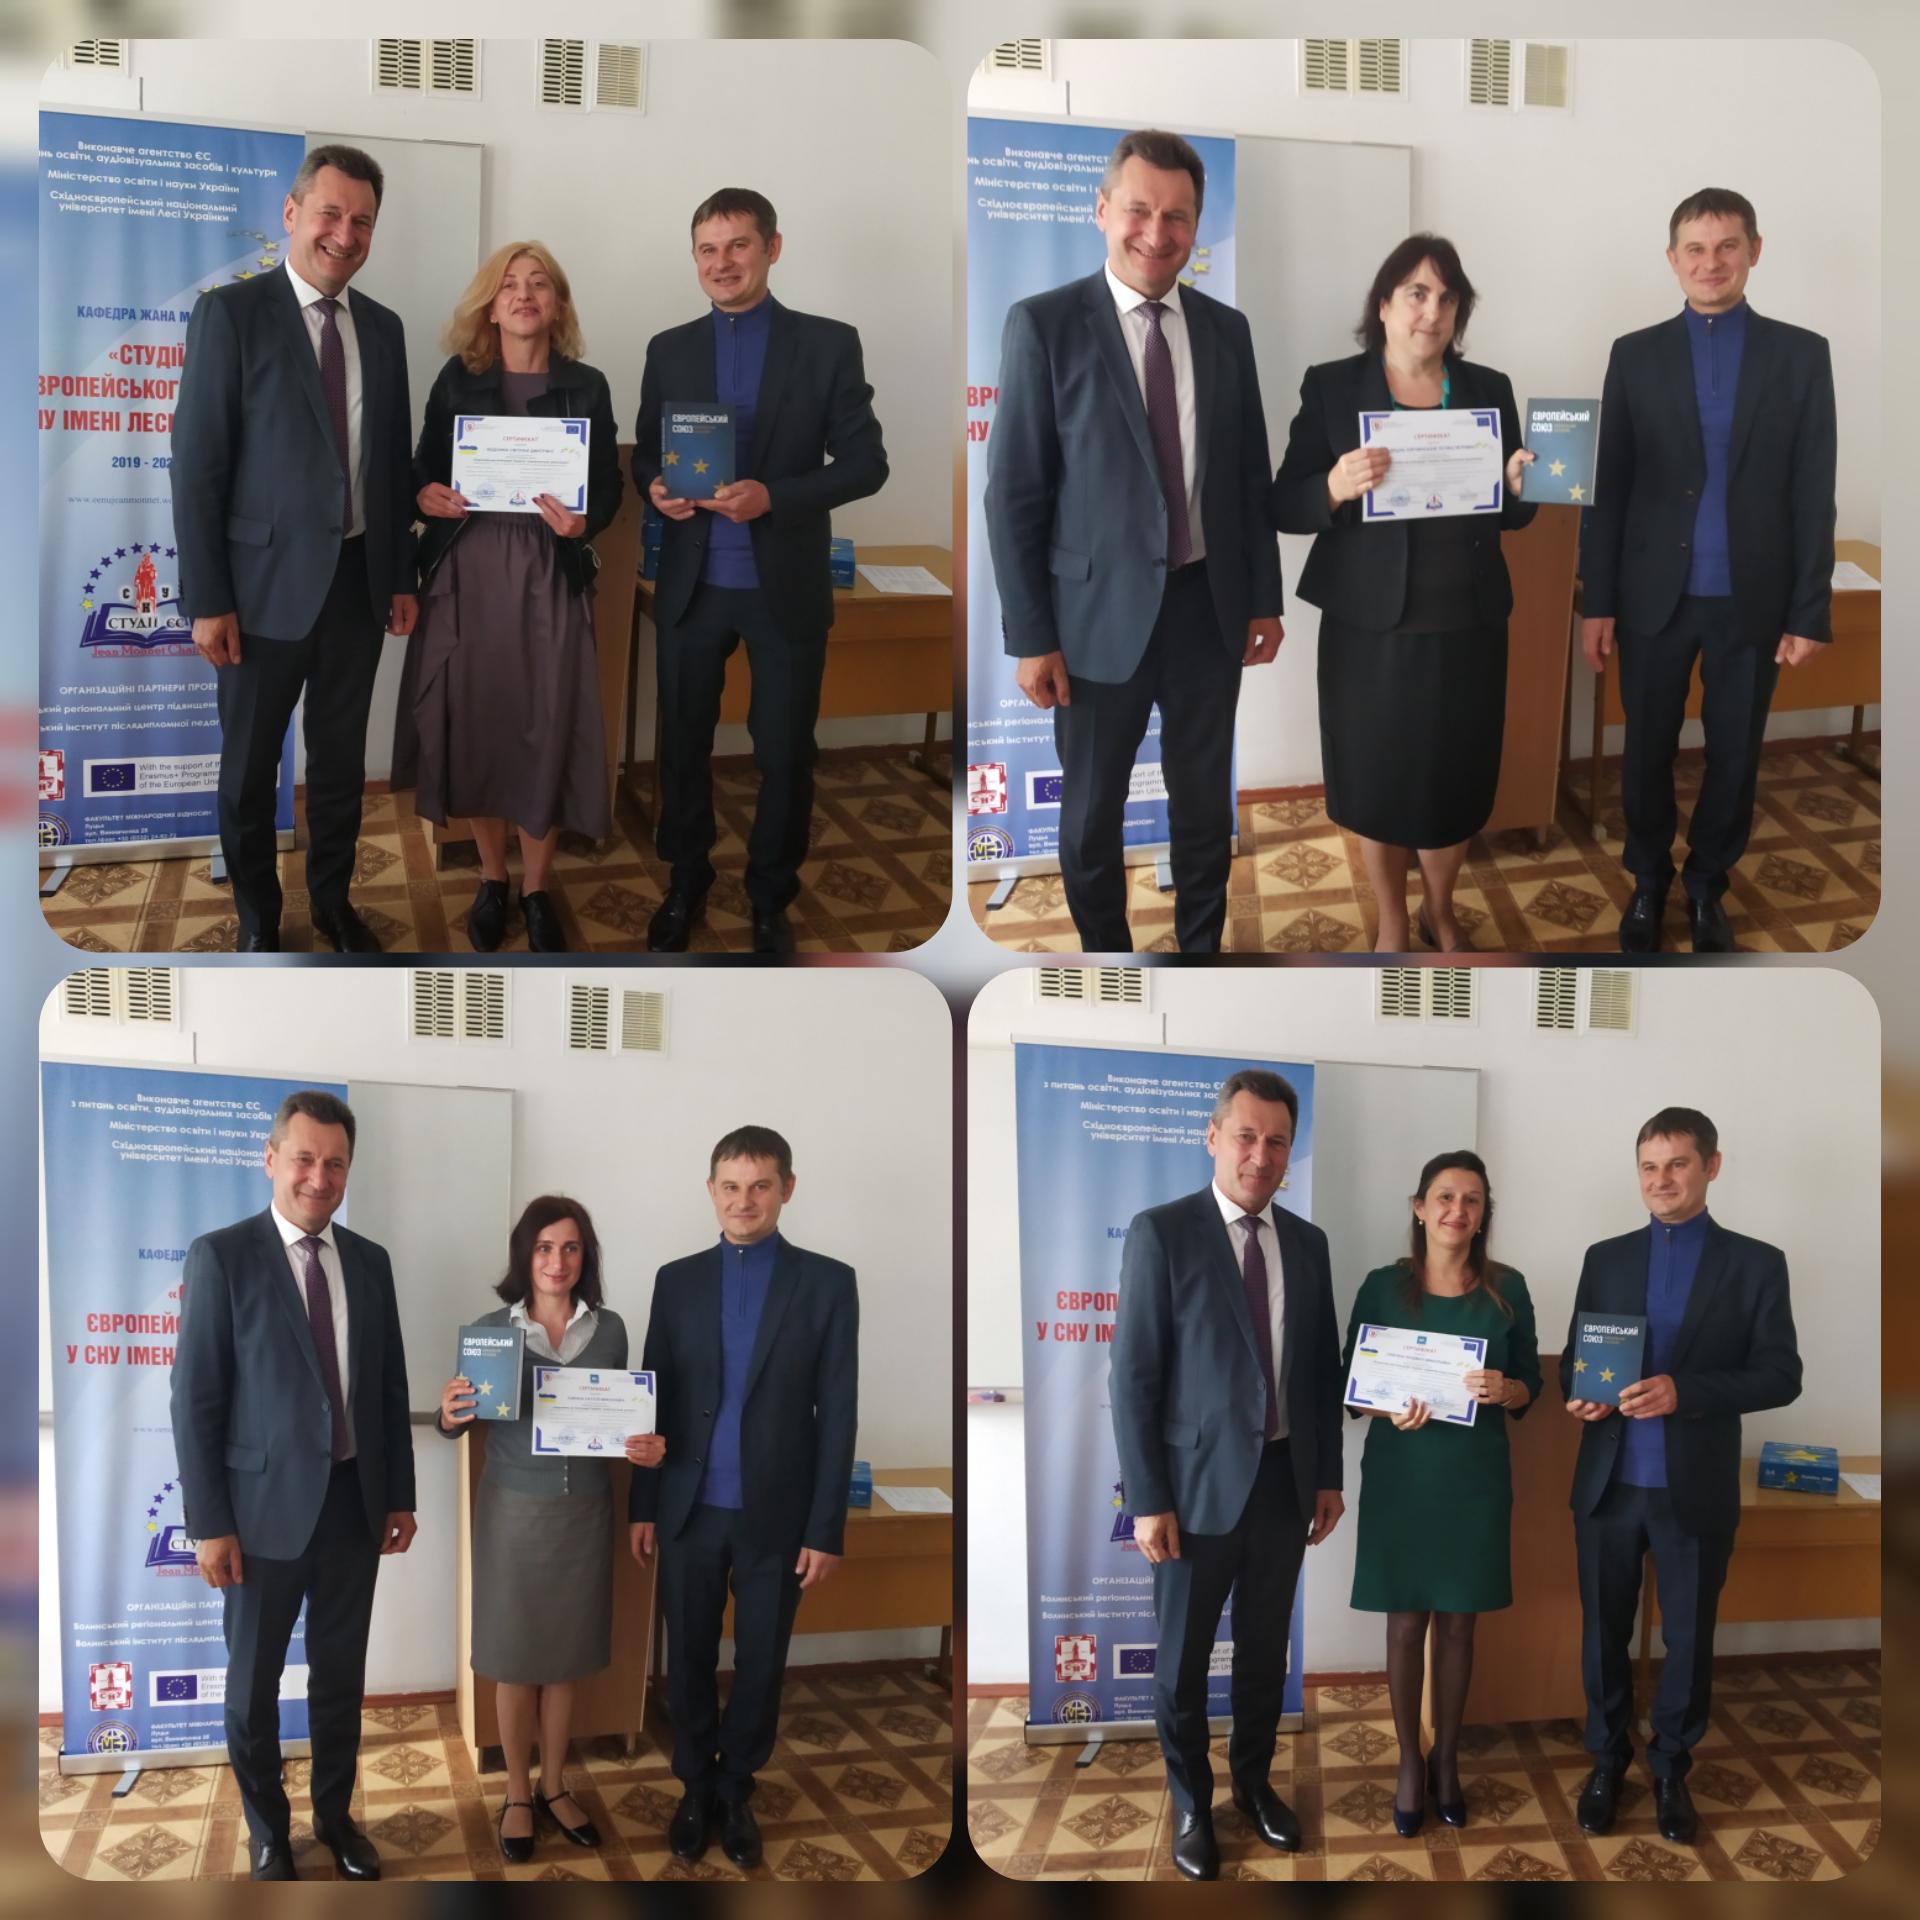 «Студії ЄС у ВНУ імені Лесі Українки»: слухачі тренінгів отримали сертифікати